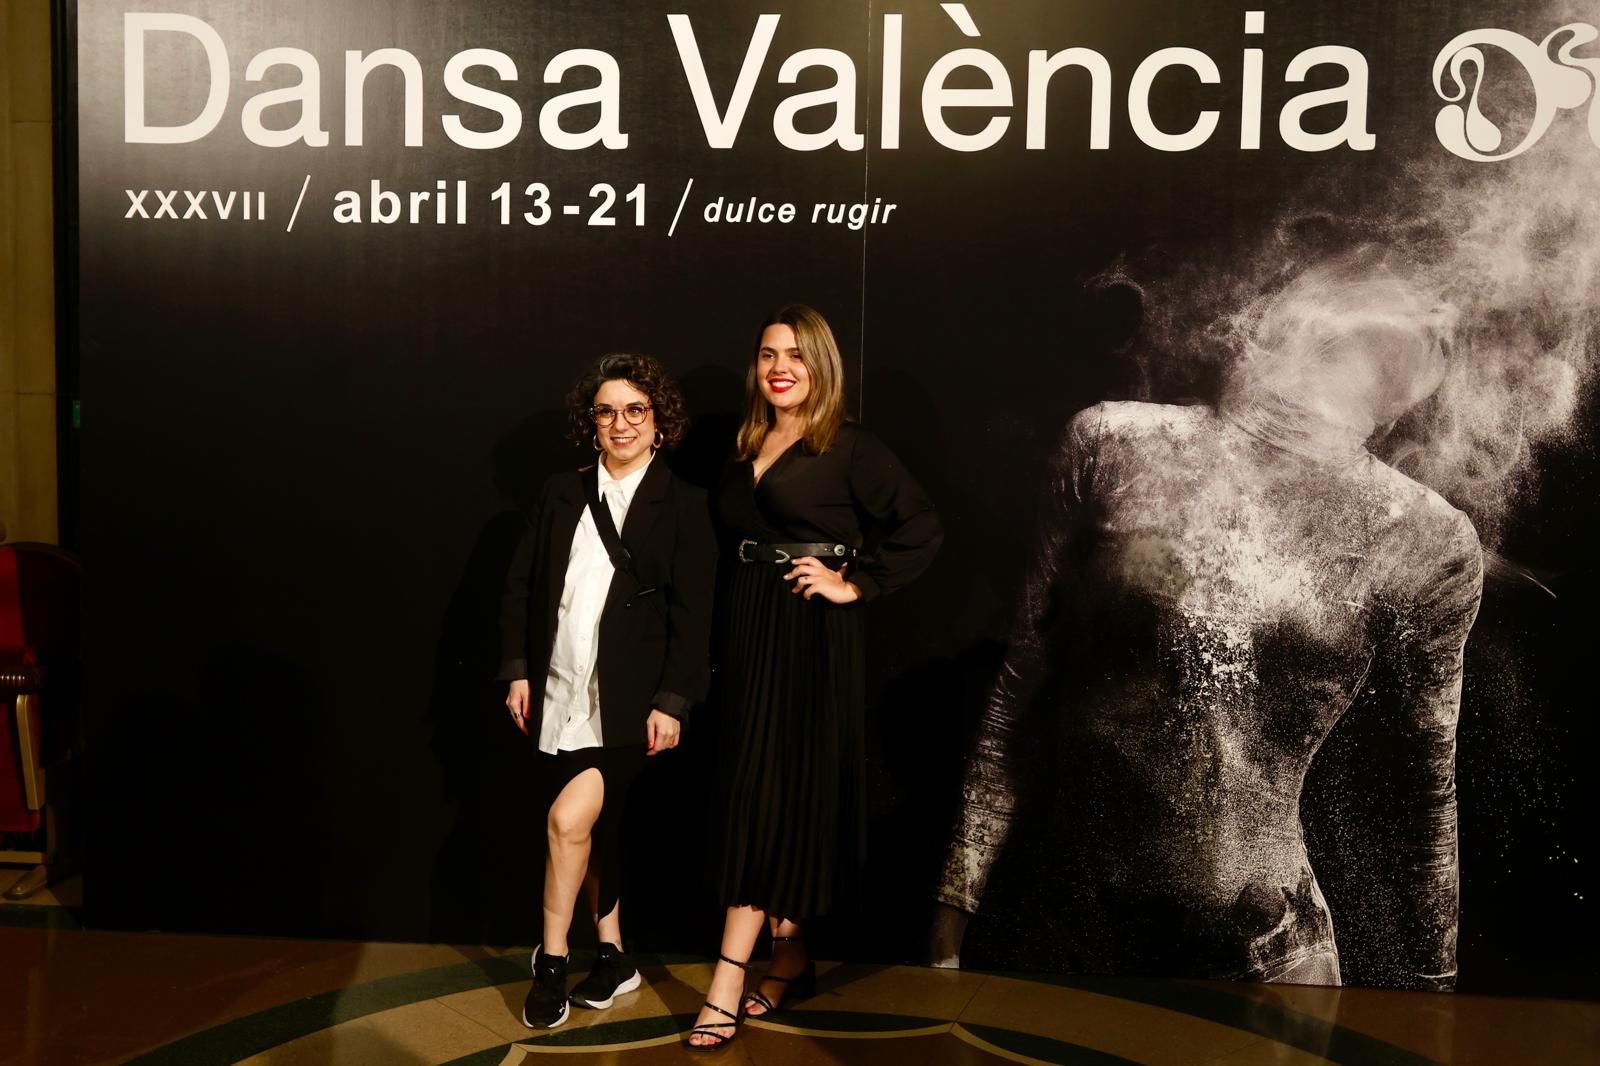 El festival Dansa València inicia su 37ª edición